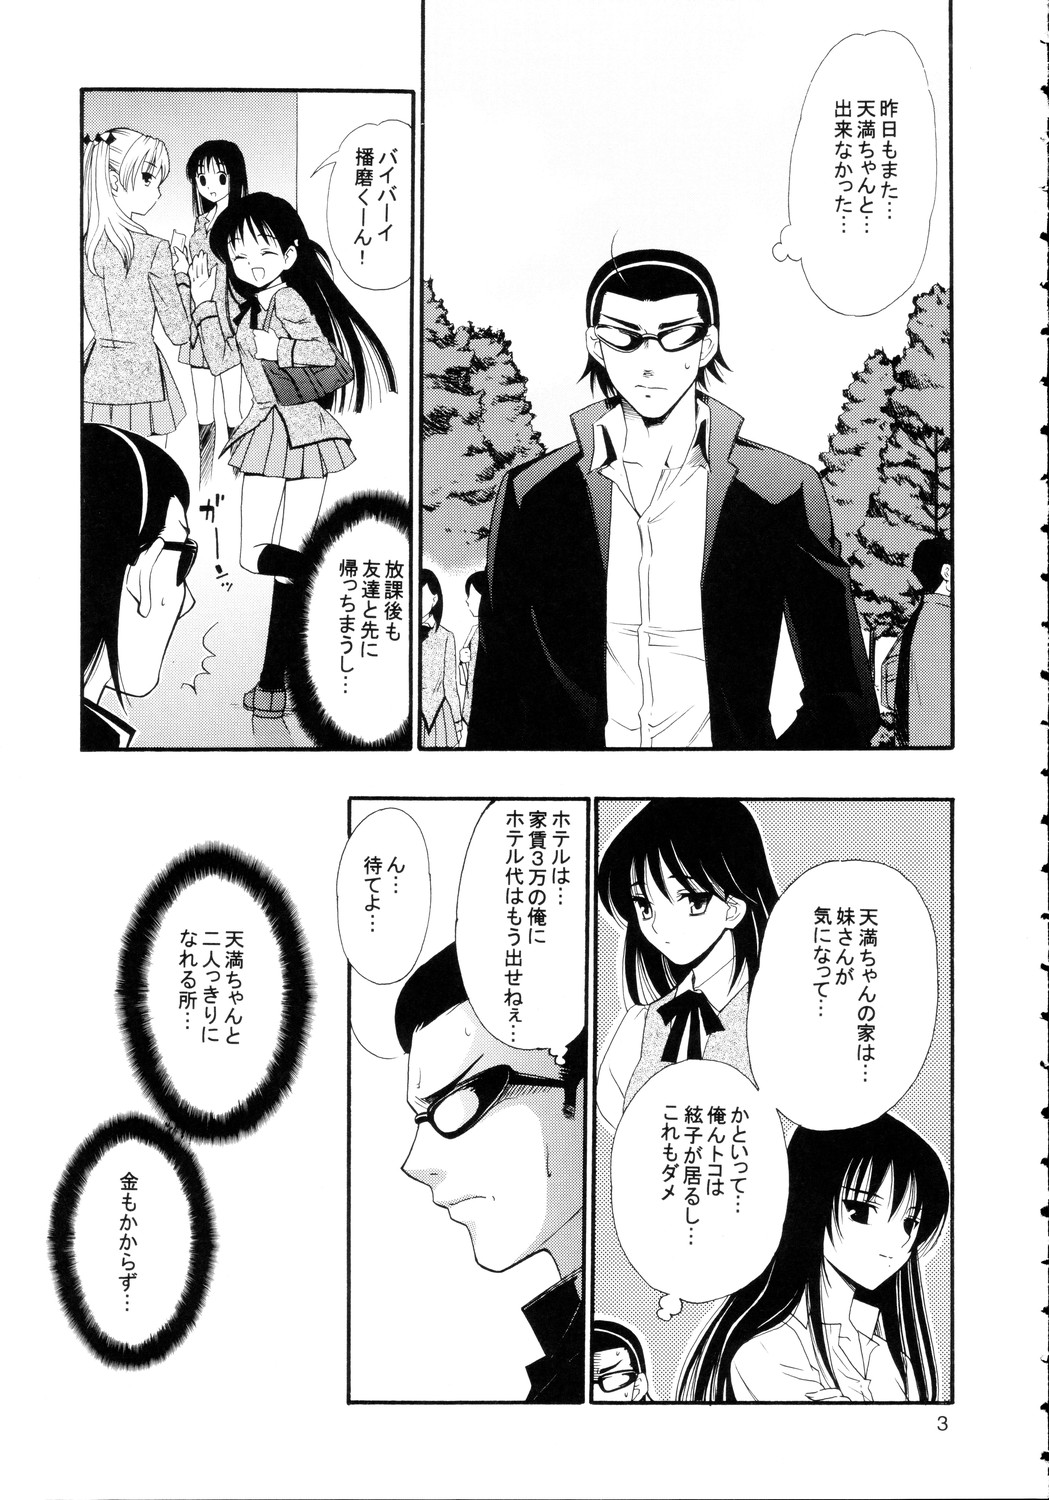 [Teruo Haruo] Hige Seito Harima! 4 (School Rumble) page 3 full